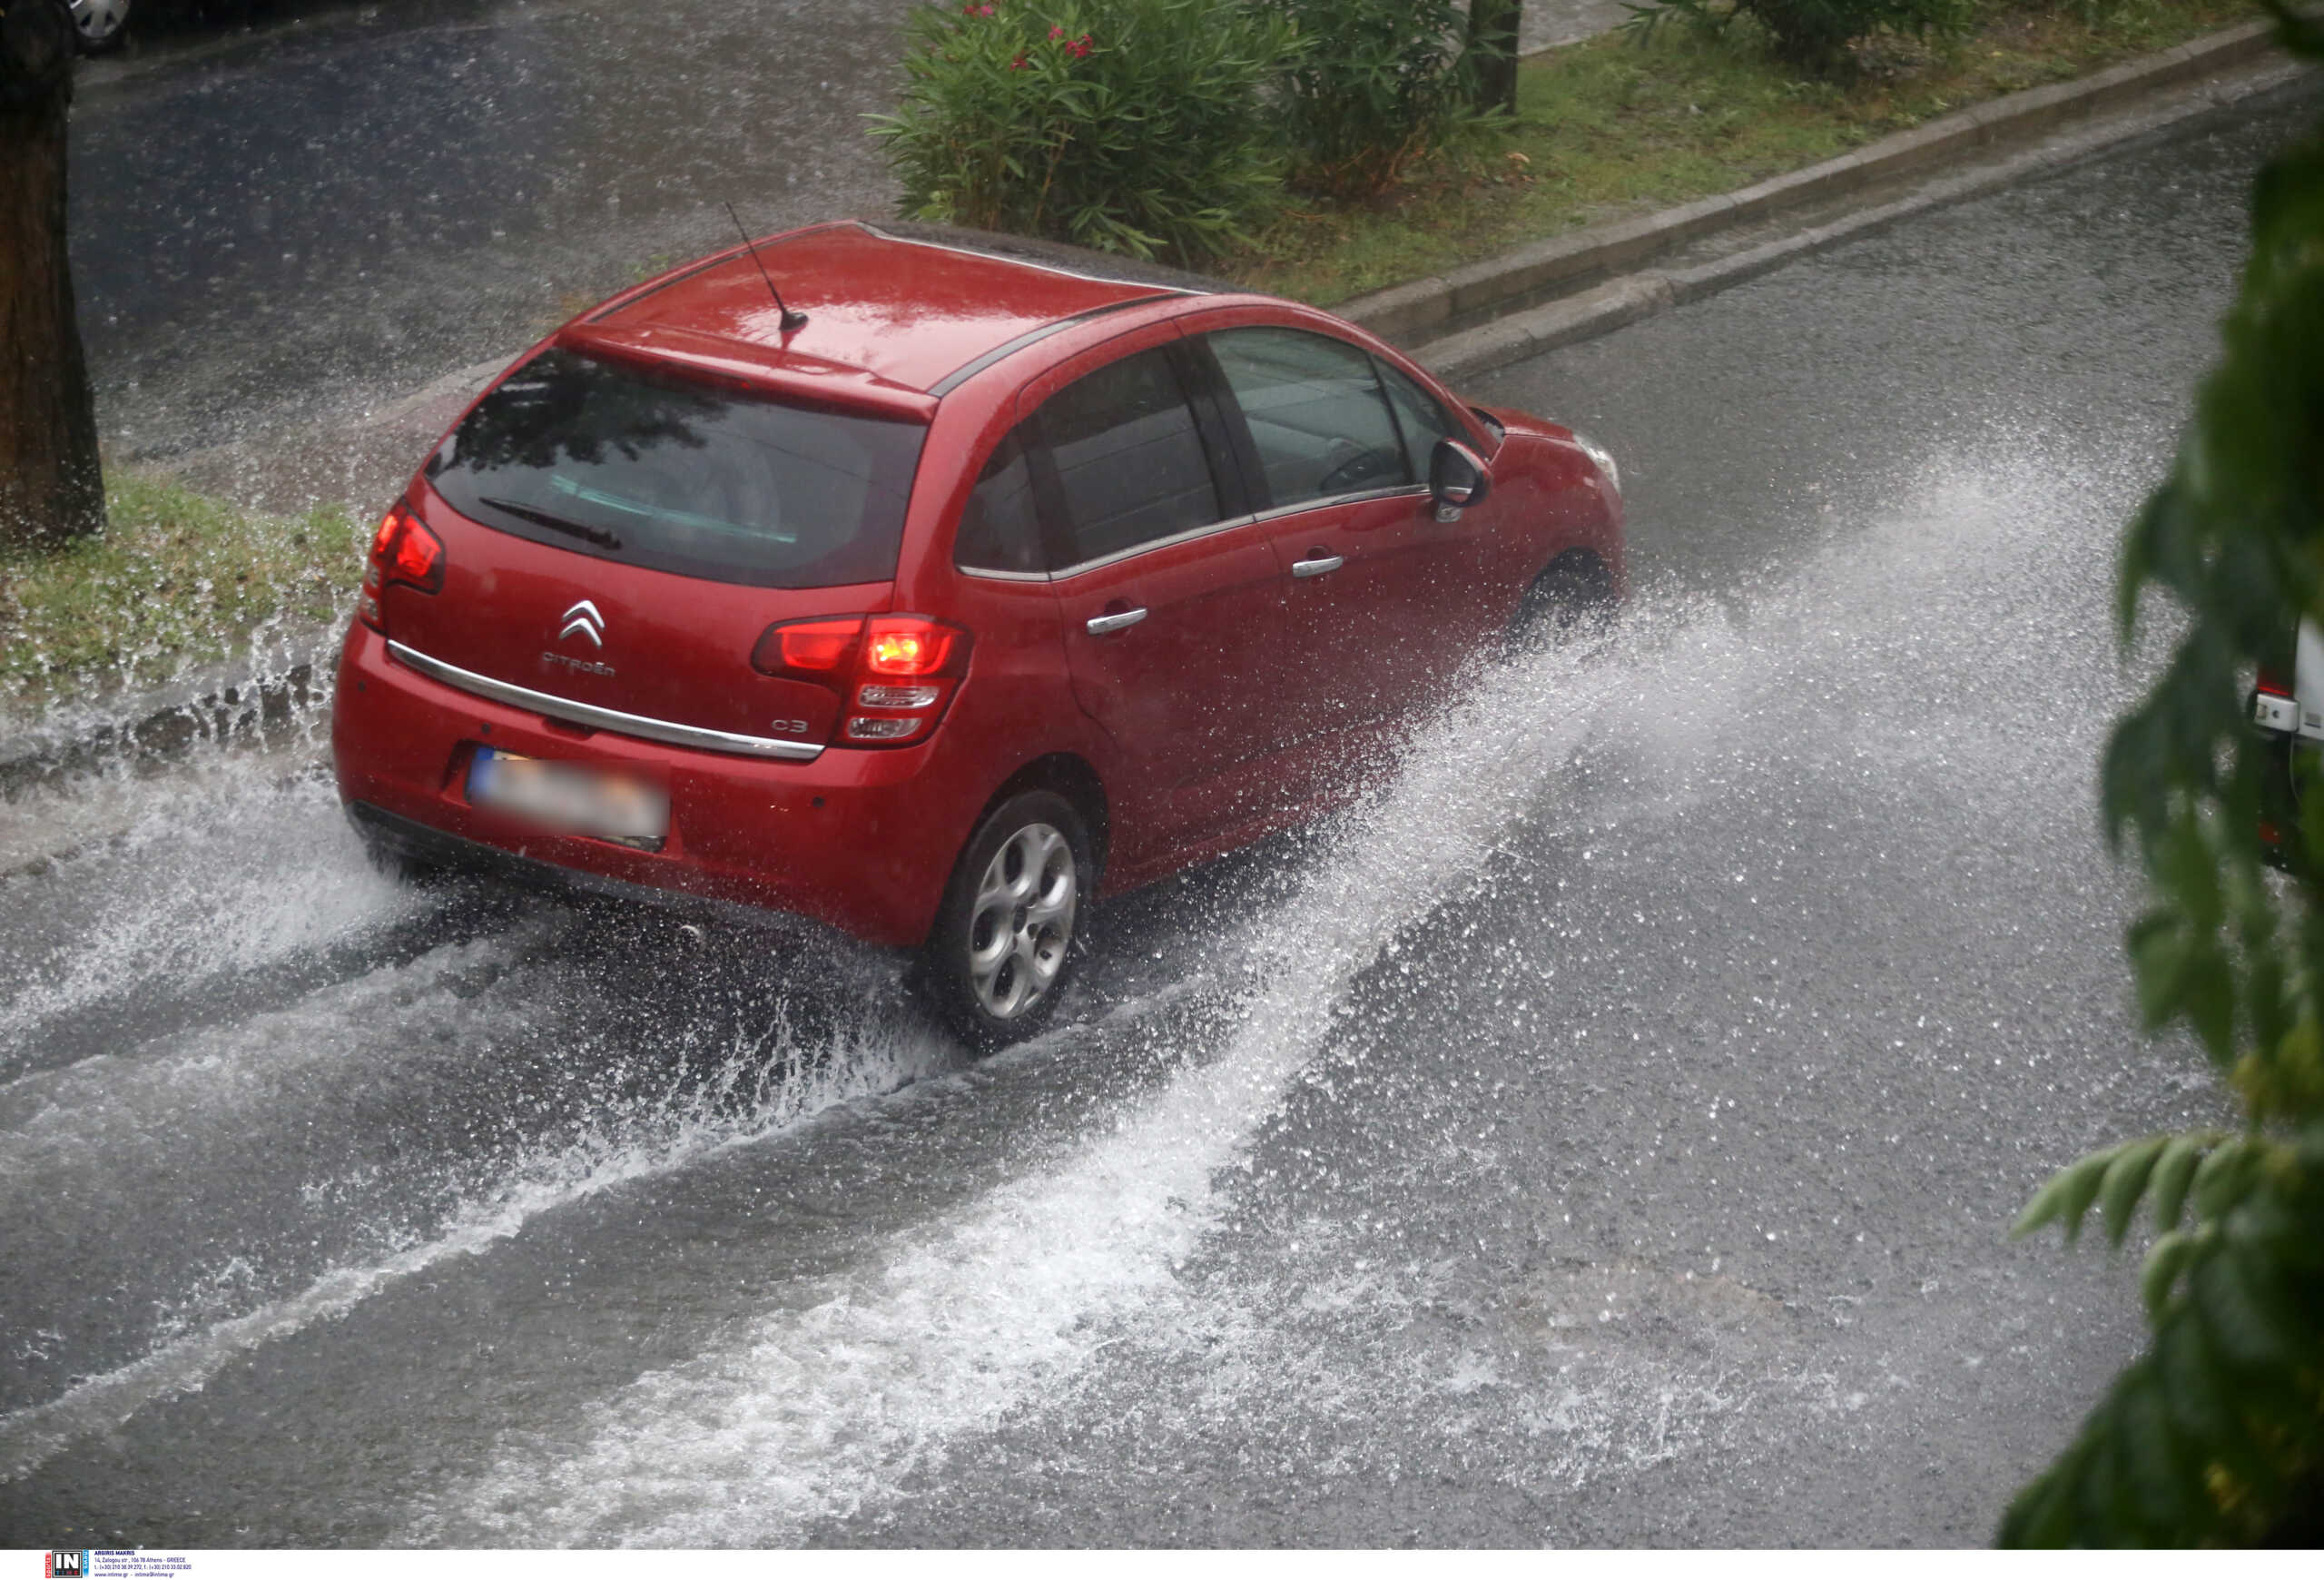 Καιρός: Αυτοκίνητο με οικογένεια έμεινε στη γέφυρα Καλυφτάκη λόγω βροχής